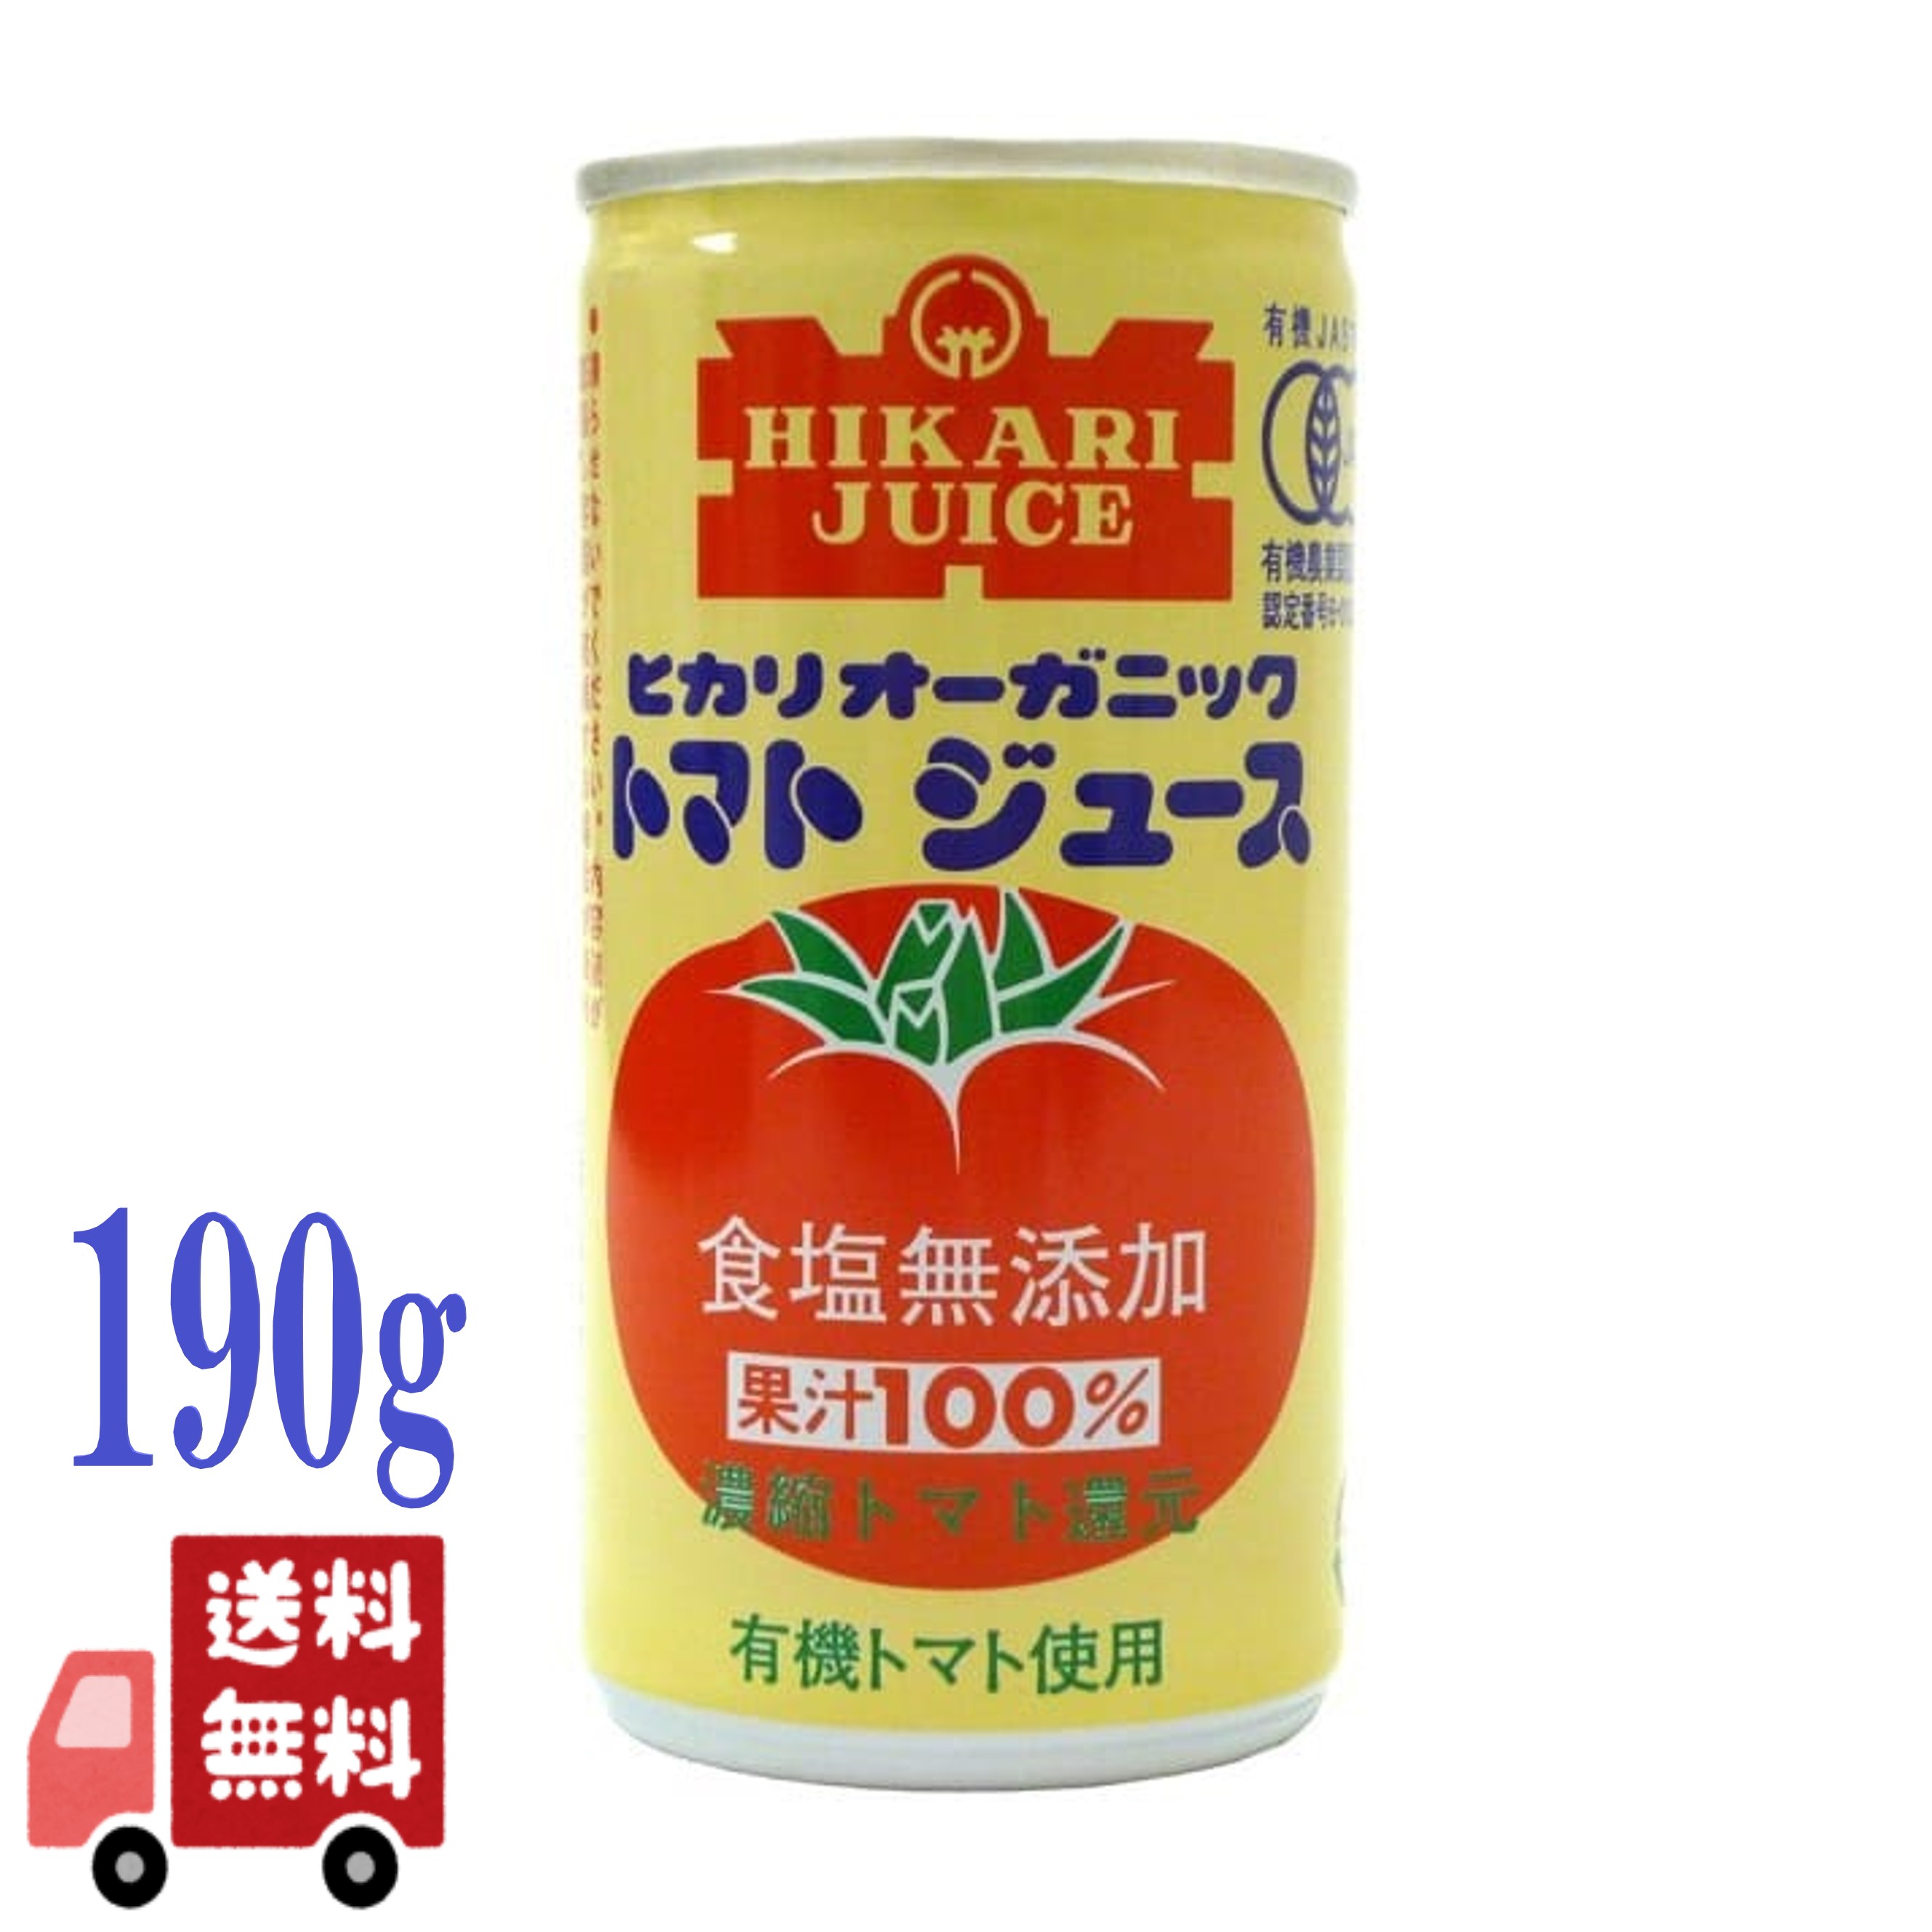 ヒカリ 有機 無塩 トマトジュース 190g 光食品 オーガニック 野菜ジュース 香料 保存料 着色料 酸味料不使用